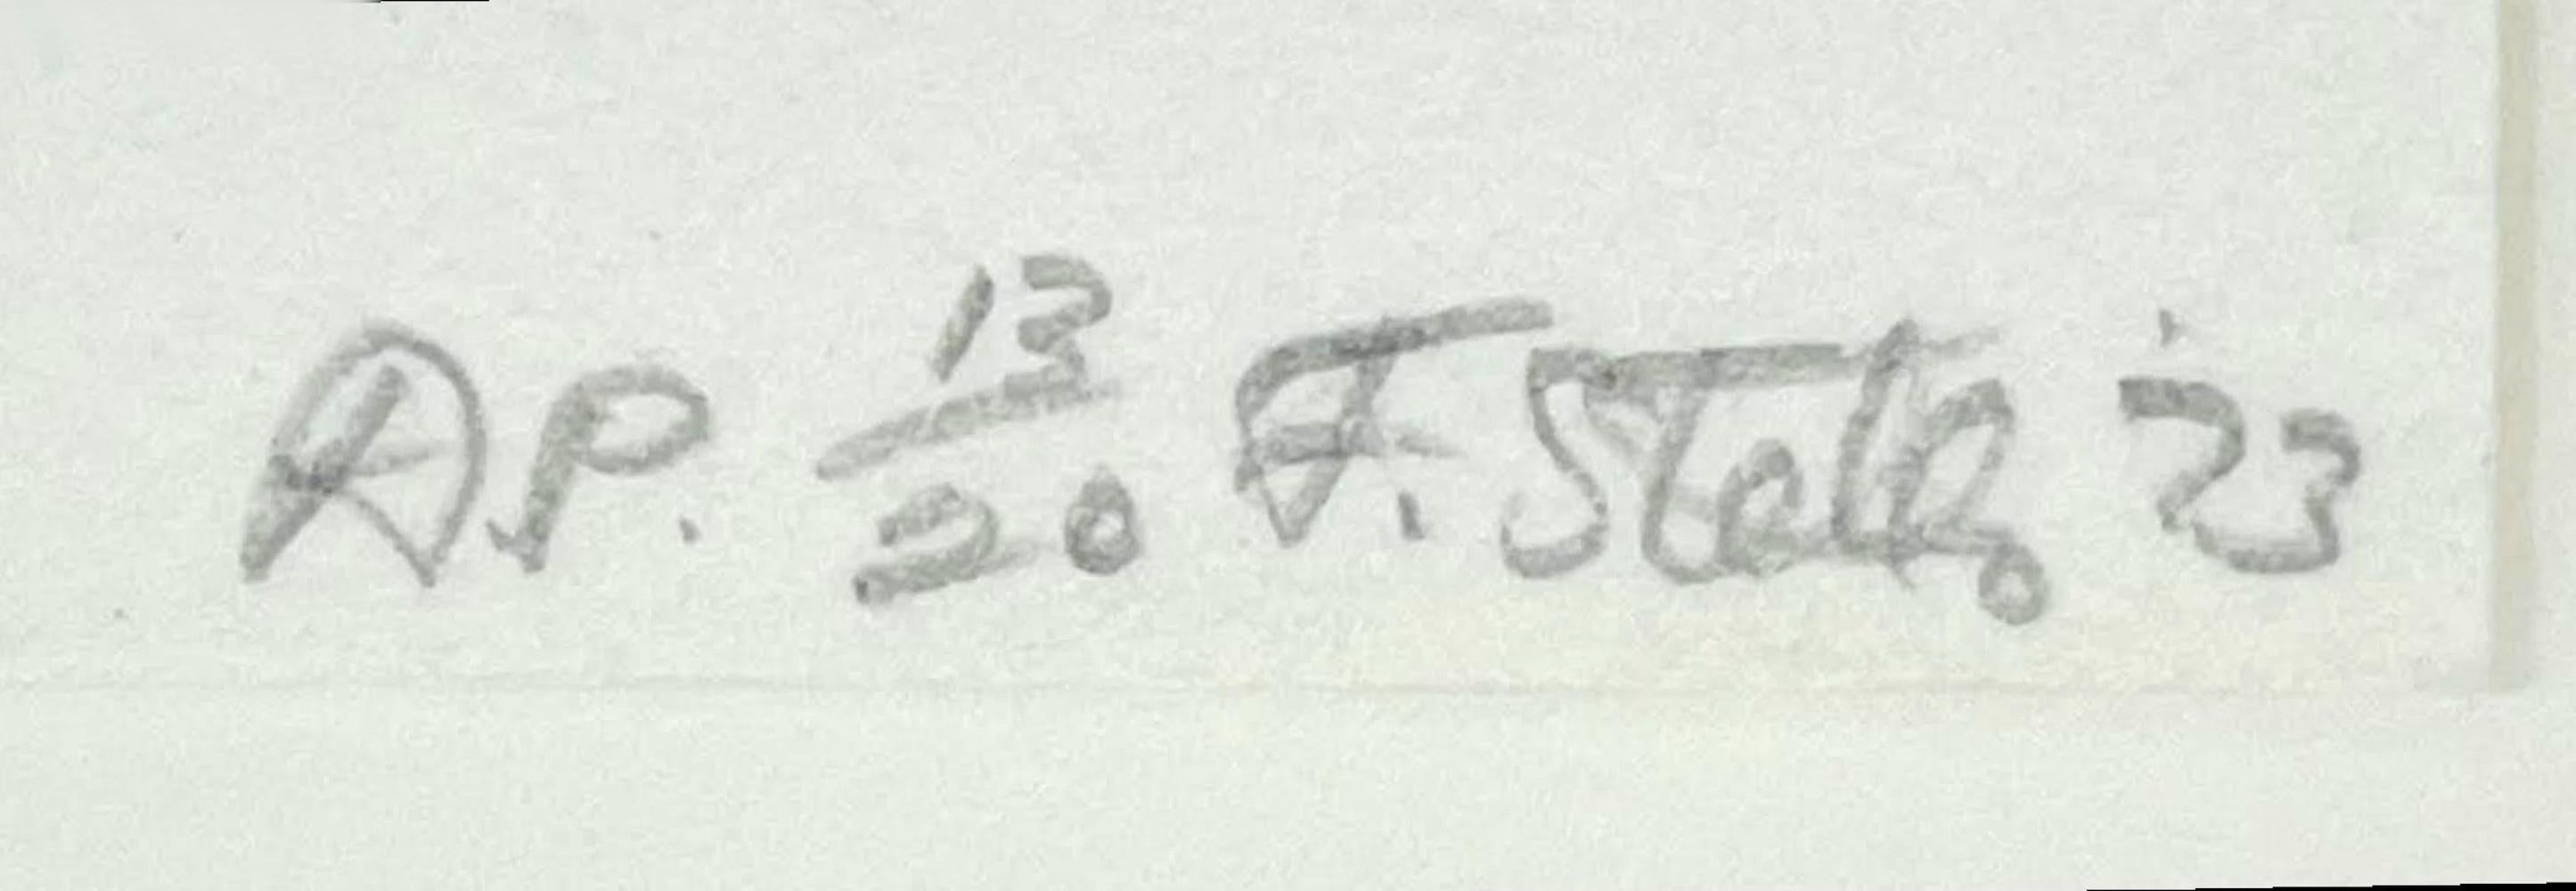 Frank Stella
Les Indes Galantes V (Axsom 90), 1973
Lithographie sur papier moulé de J. Green
Signée au crayon, datée et numérotée AP 13/20 par Frank Stella au recto.
16 × 22 pouces
Non encadré
Cette lithographie originale de Frank Stella, imprimée à